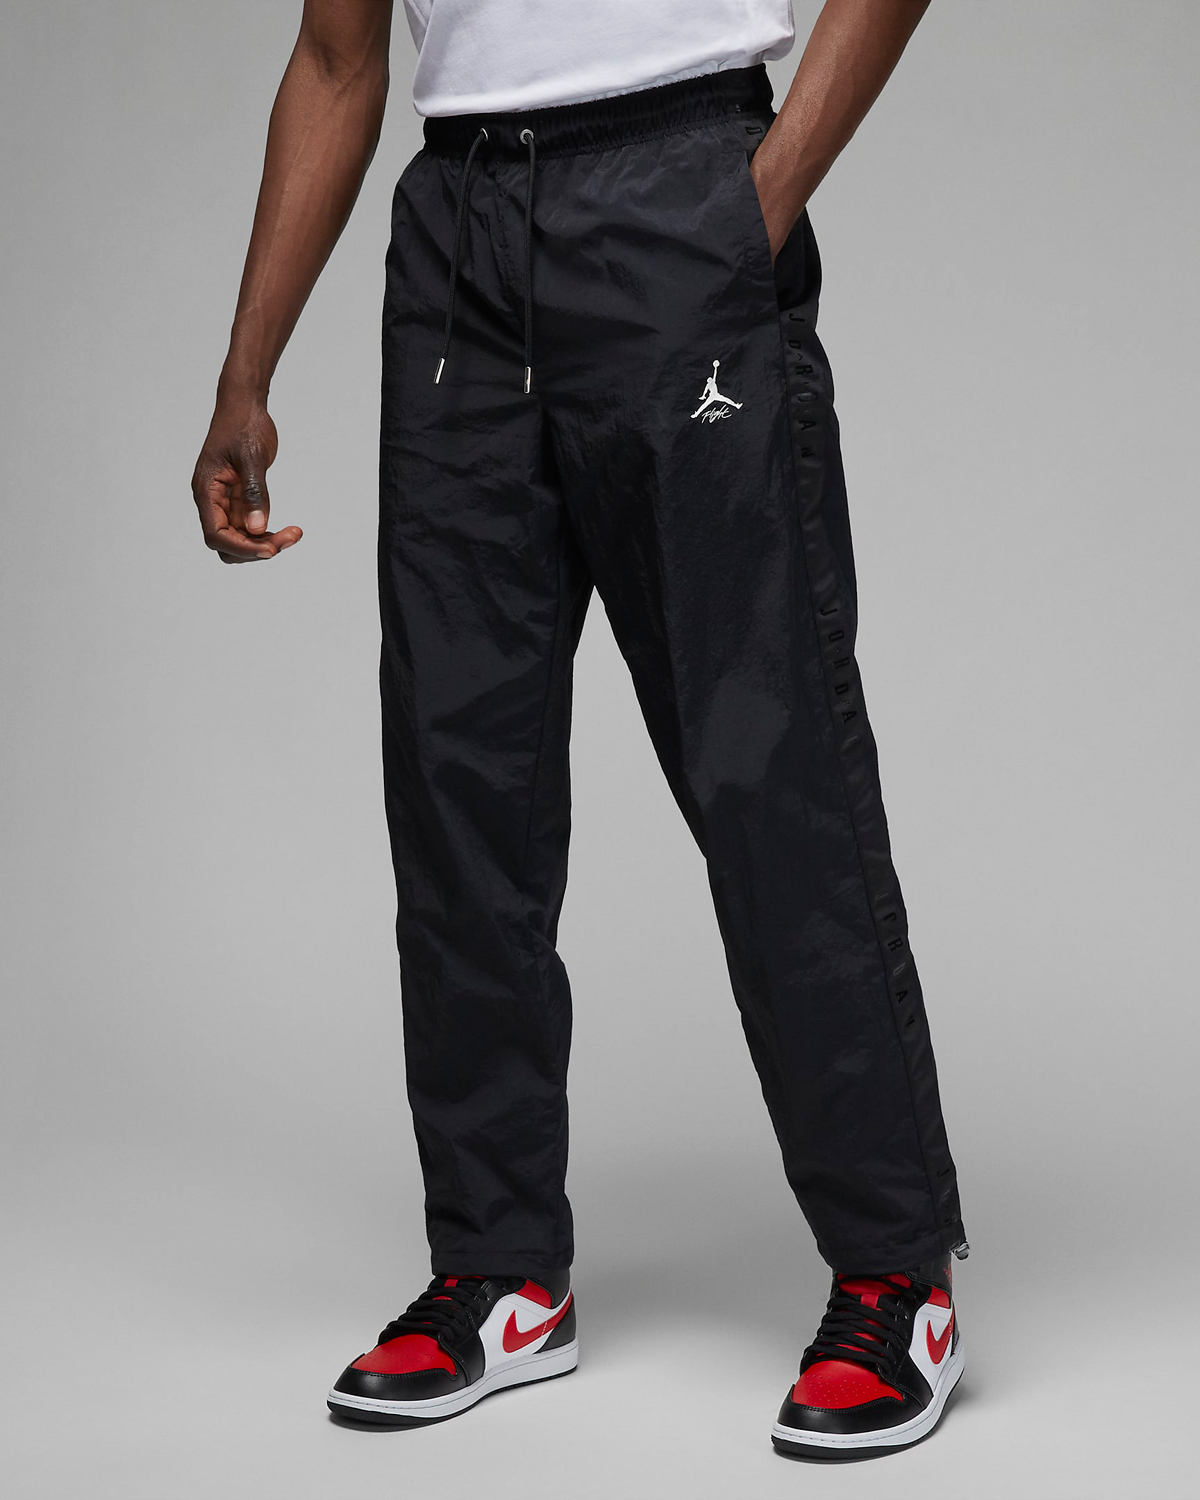 Jordan-Essentials-Warmup-Pants-Black-1